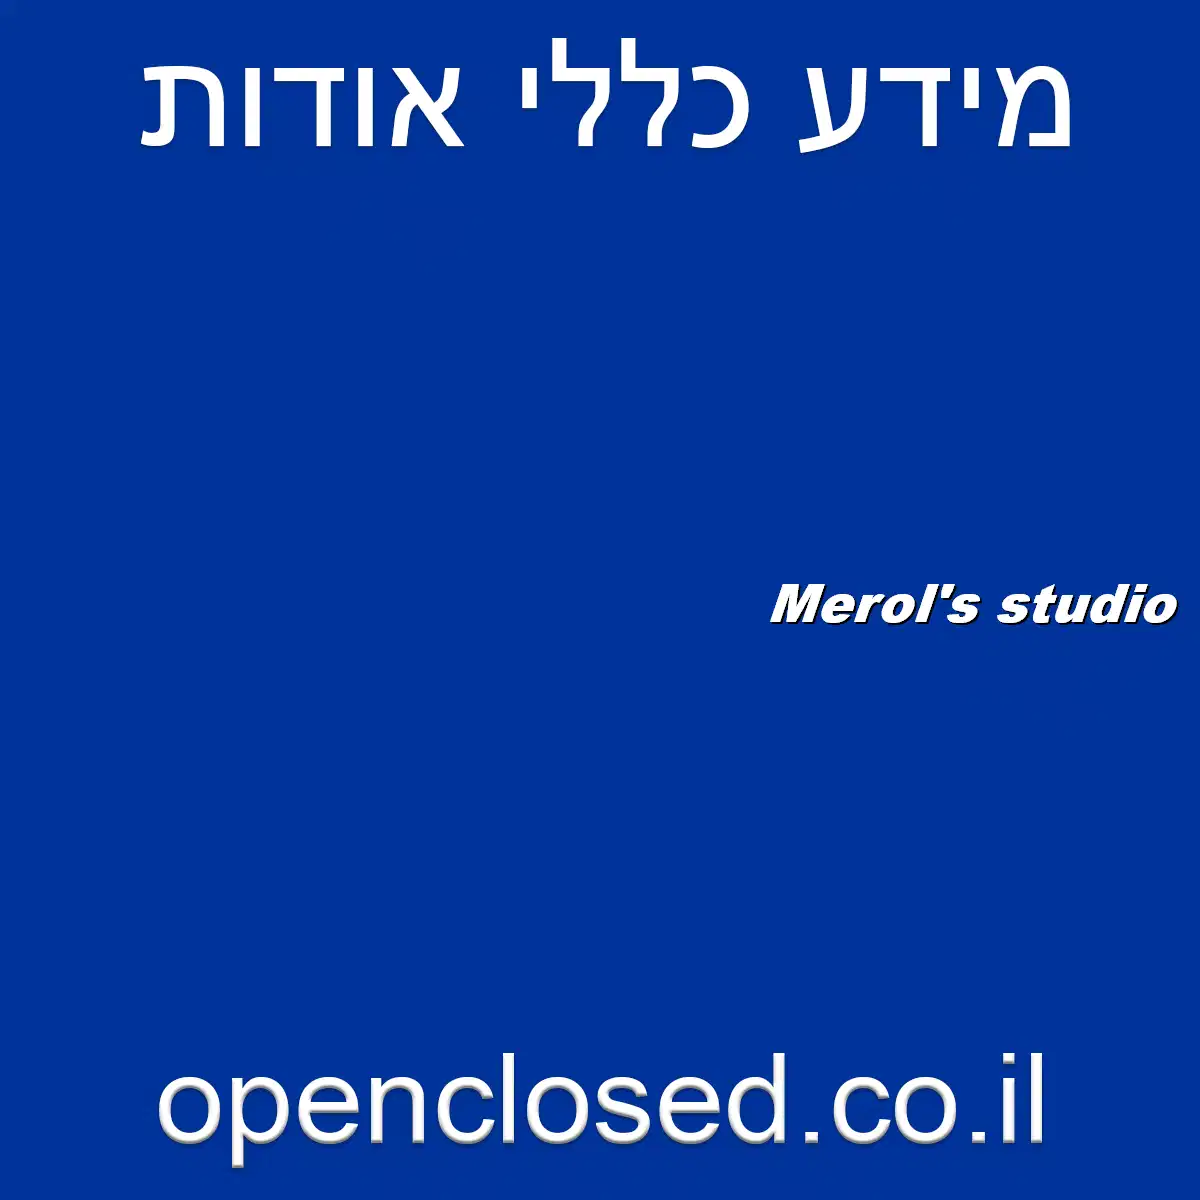 Merol’s studio